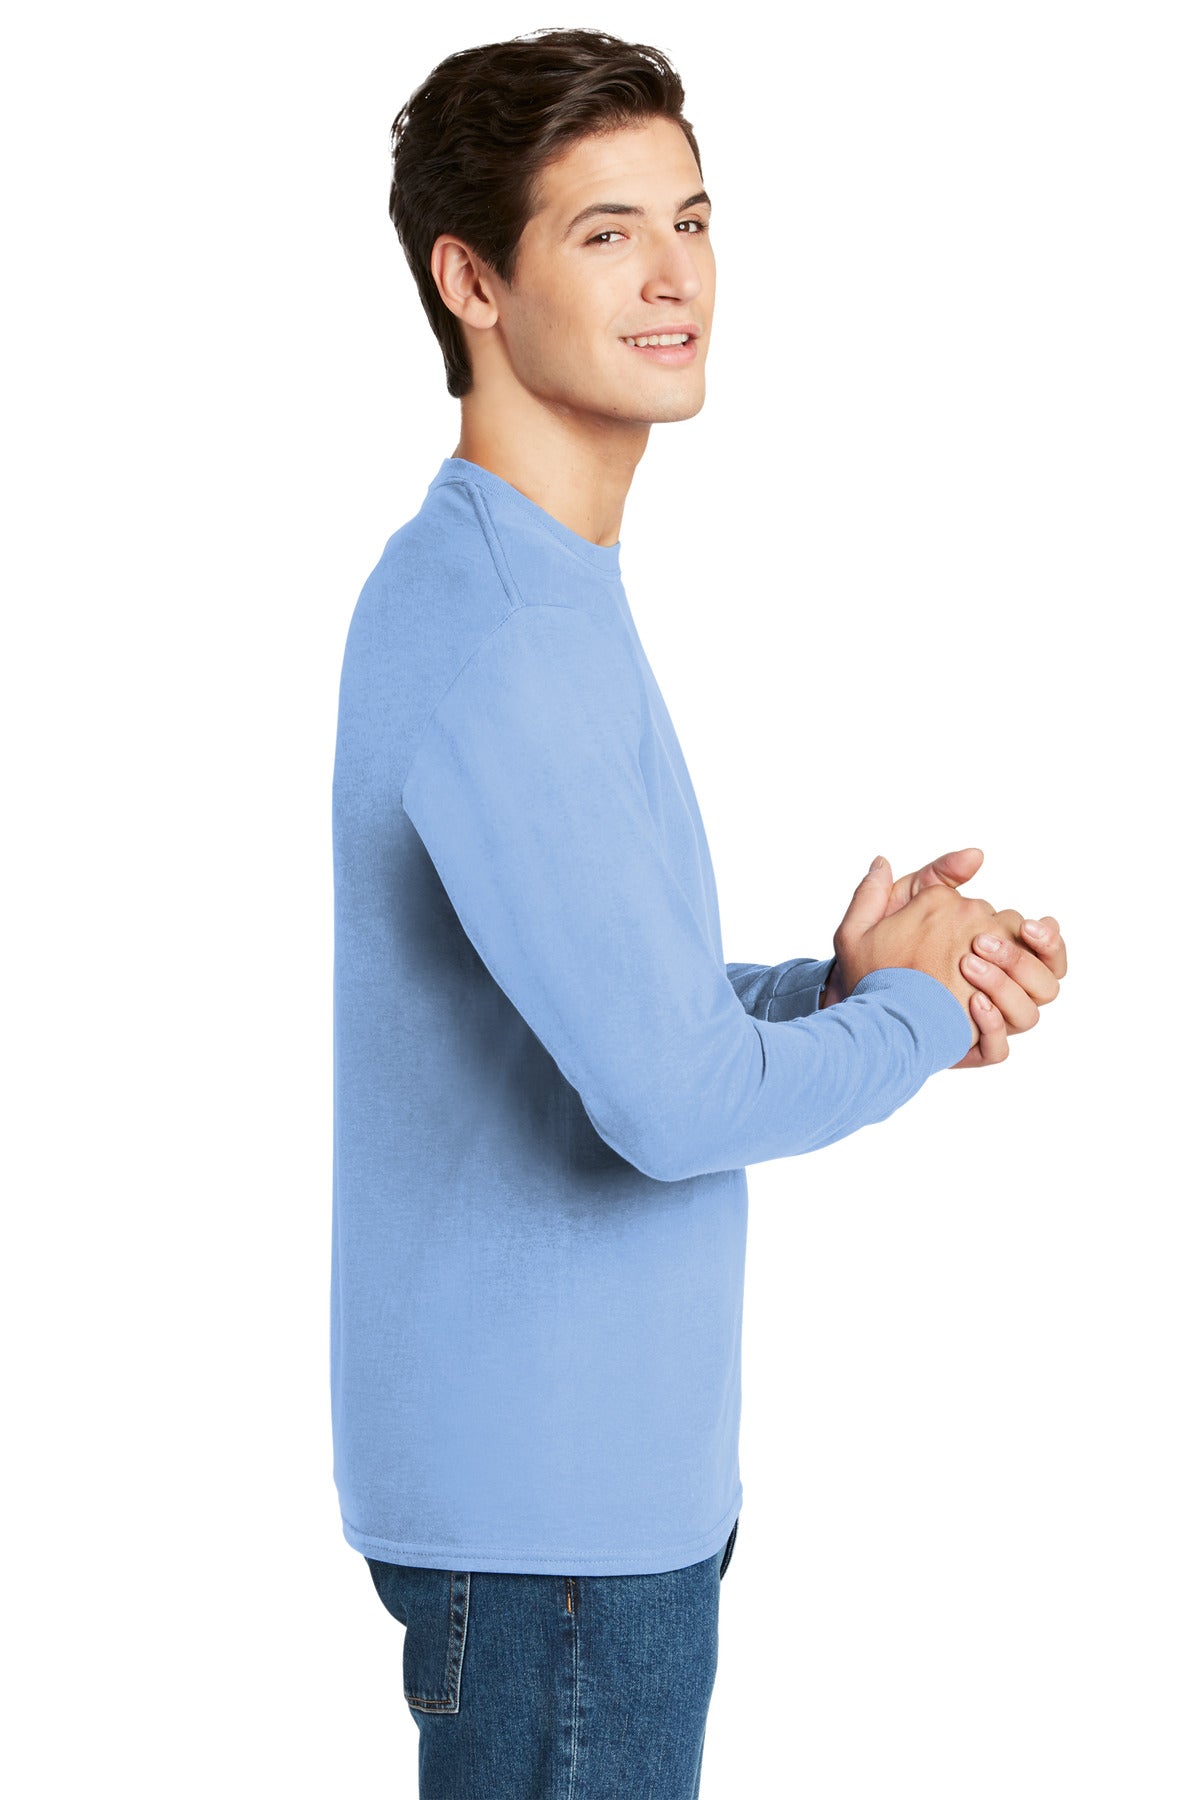 Hanes® - Authentic 100% Cotton Long Sleeve T-Shirt. 5586 [Light Blue] - DFW Impression